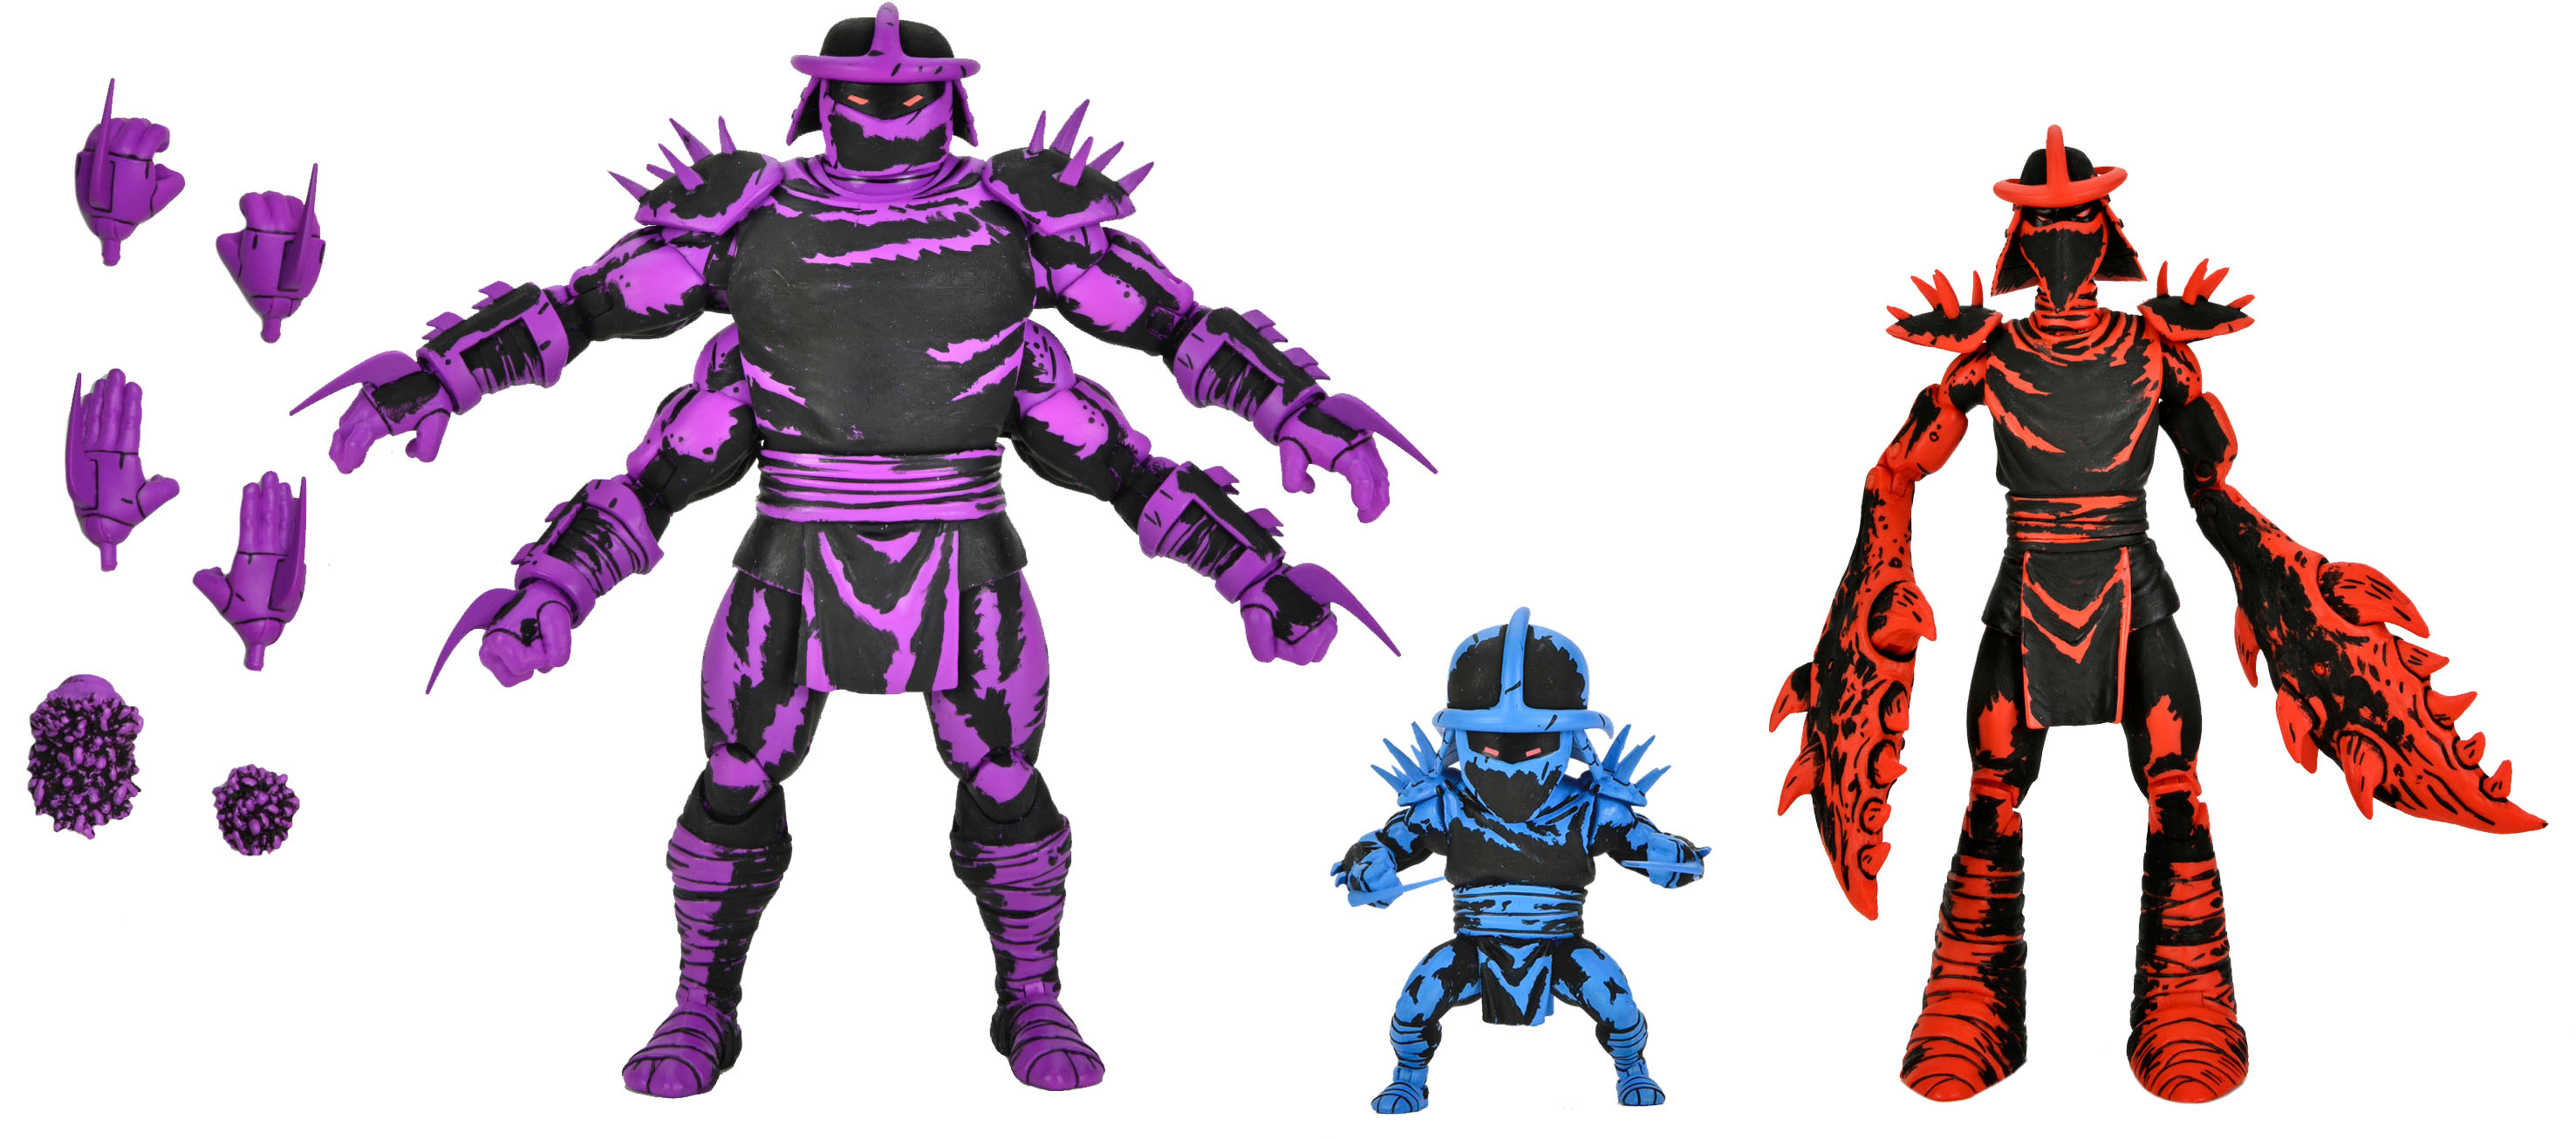 NECA Teenage Mutant Ninja Turtles 7 Eastman and Laird's Shredder Clones  54383 - Best Buy